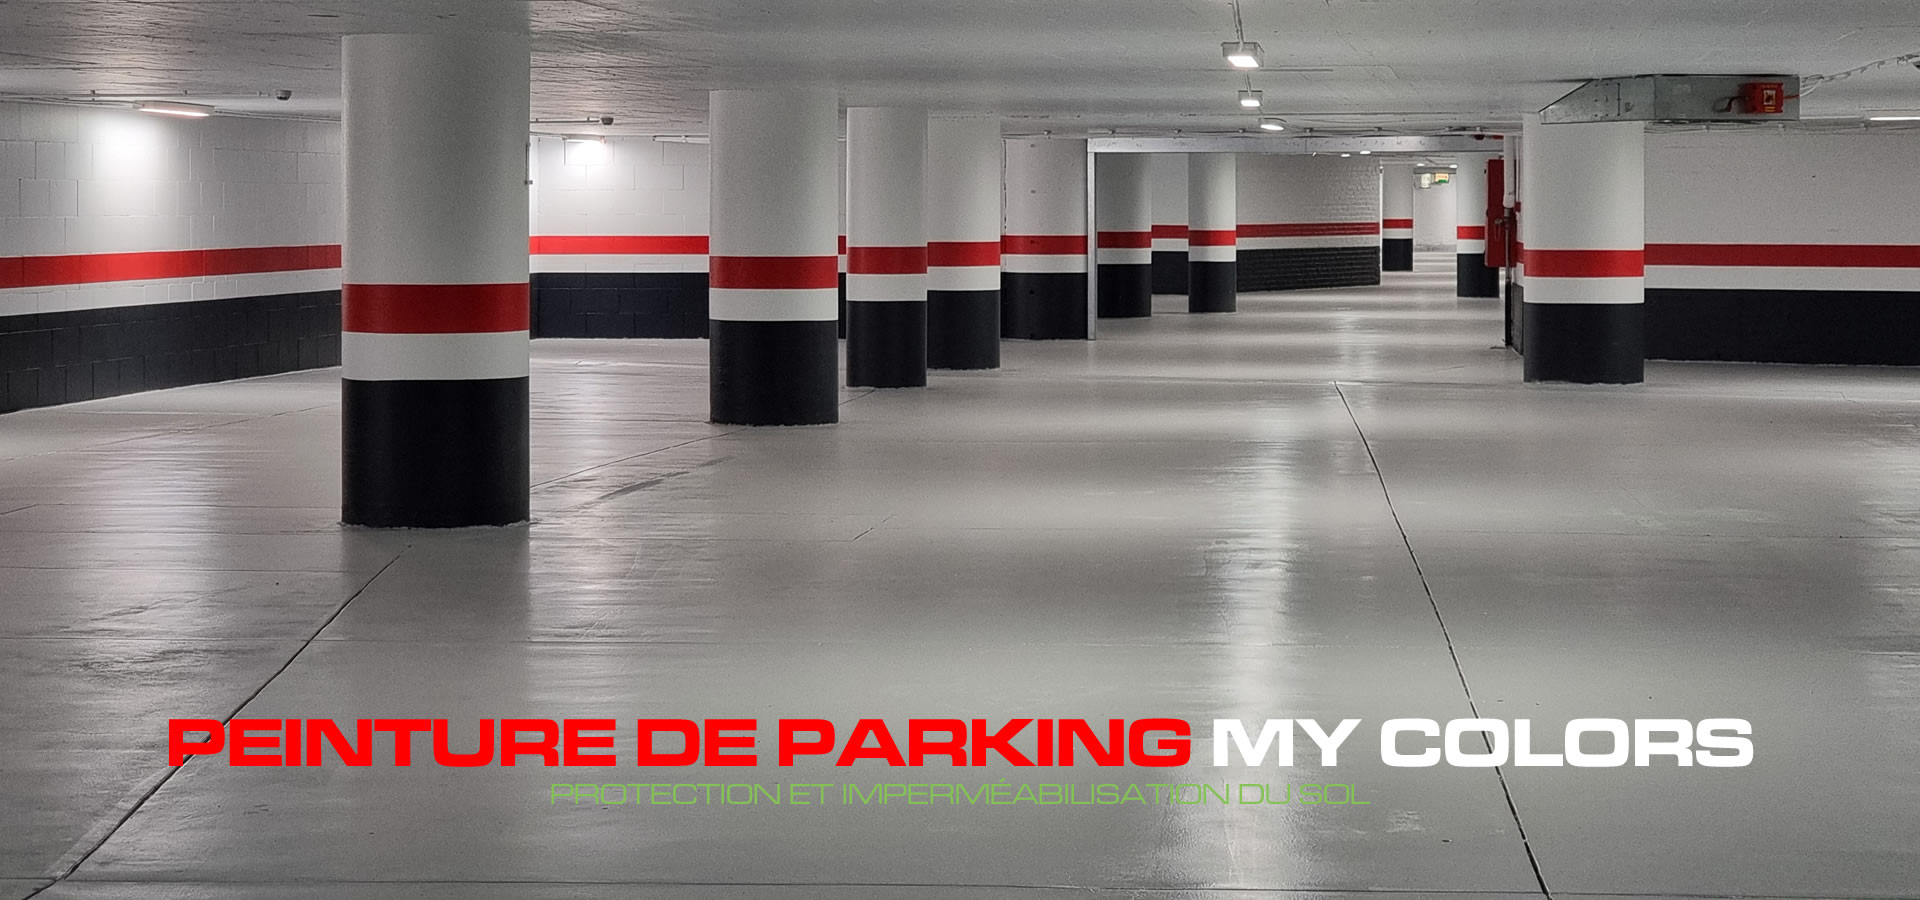 Service de peinture de parking - Bruxelles - Belgique - Devis